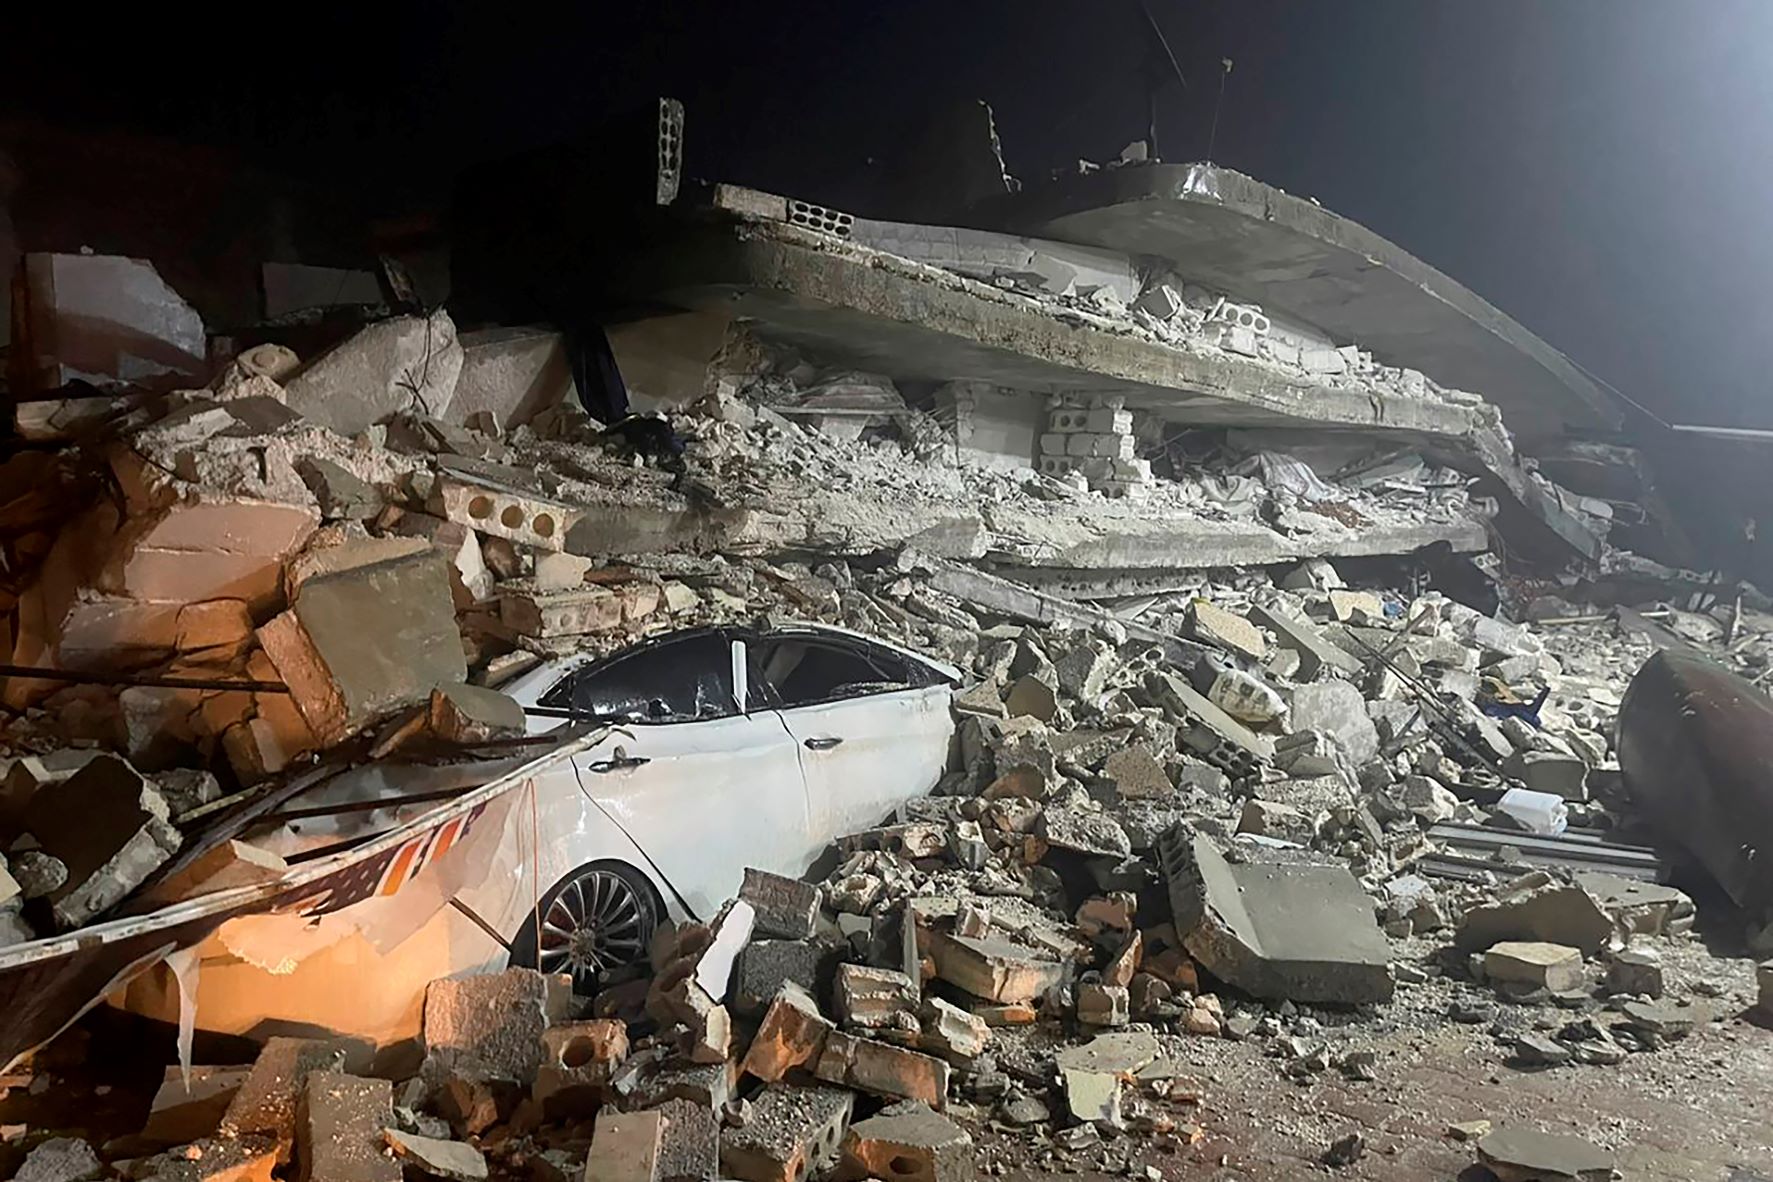 Κύμα συμπαράστασης από την διεθνή κοινότητα για τον ισχυρό σεισμό 7,8 Ρίχτερ στην Τουρκία